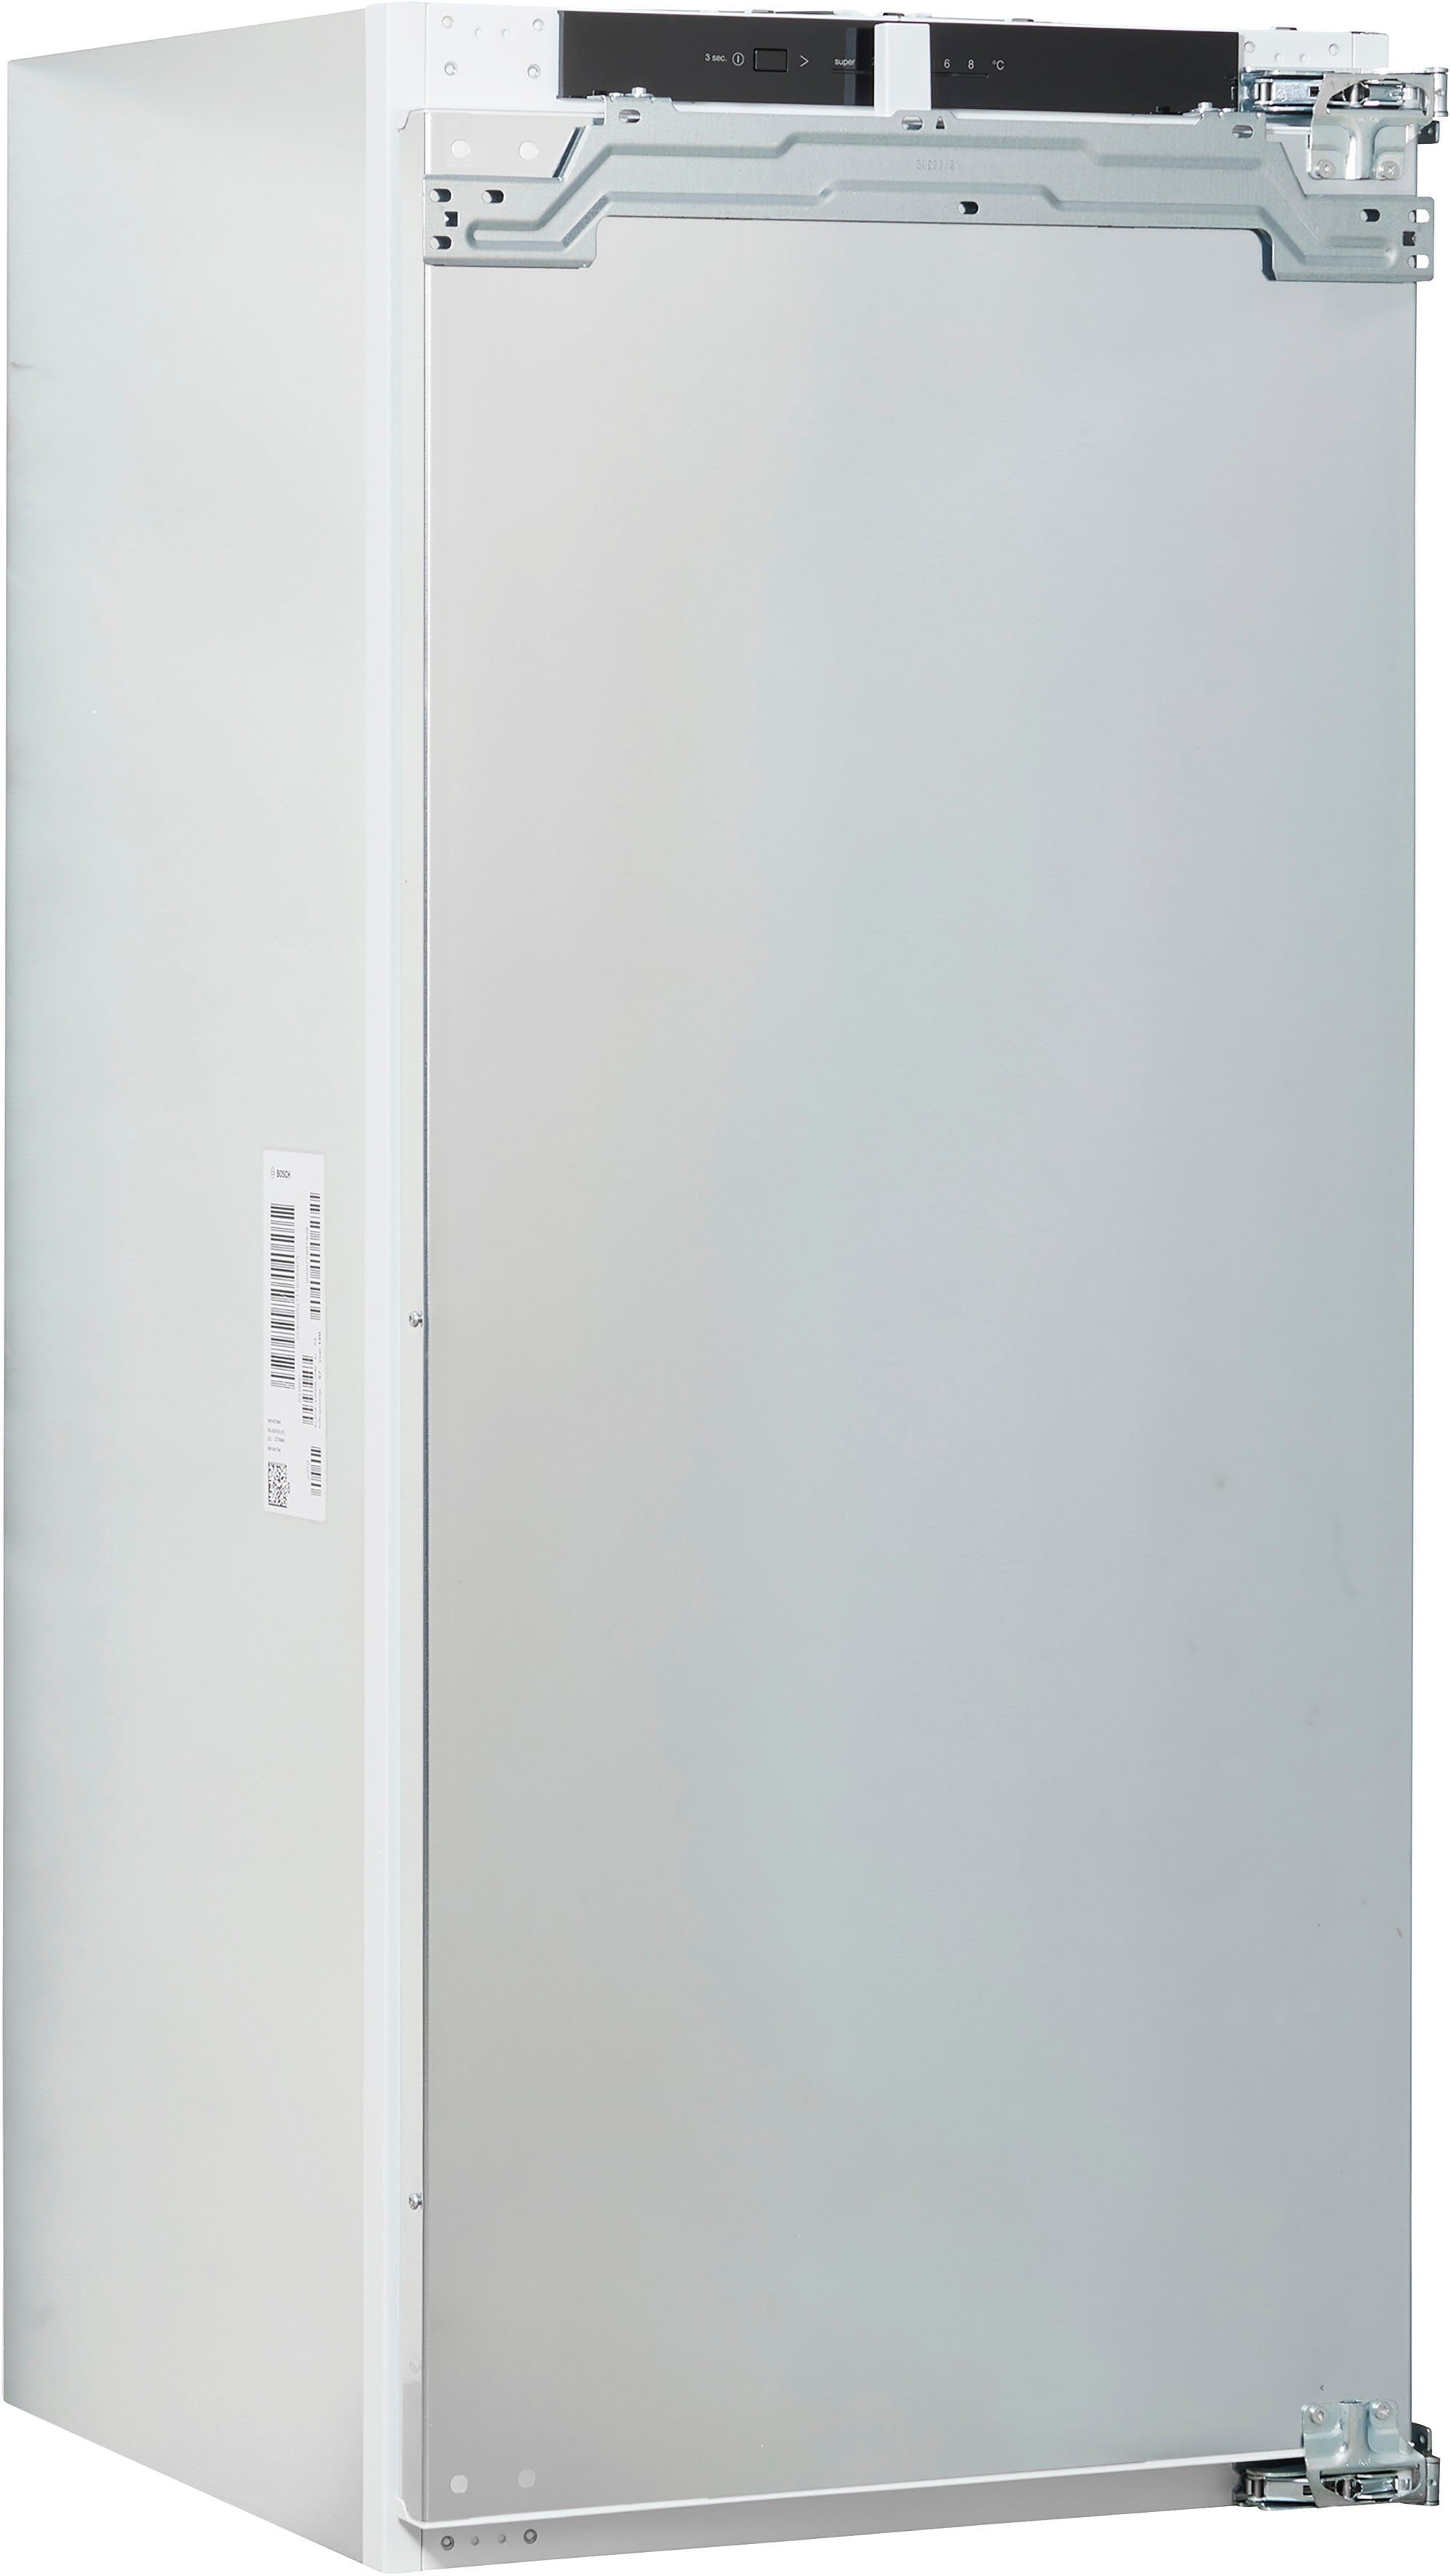 BOSCH Einbaukühlschrank breit Serie 54,1 4 cm KIL42VFE0, 122,1 cm hoch